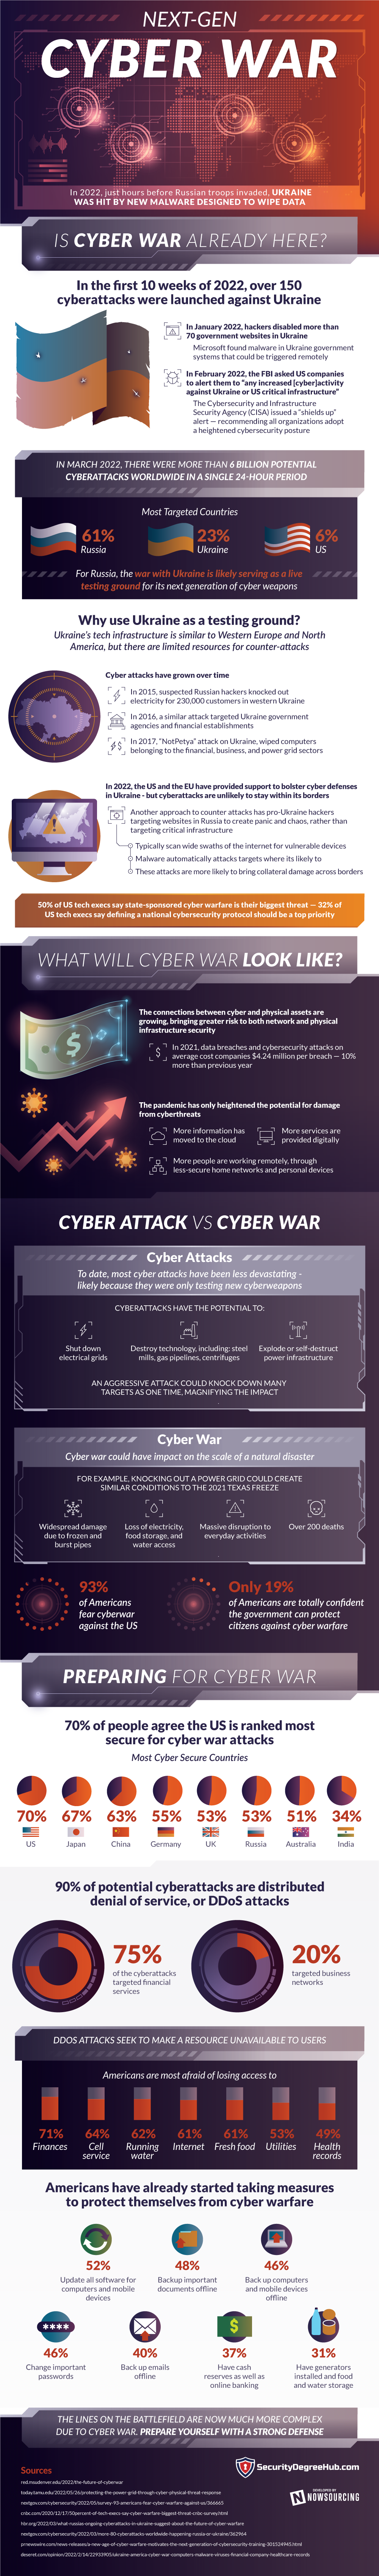 Die nächste Generation der Cyberkriegsführung